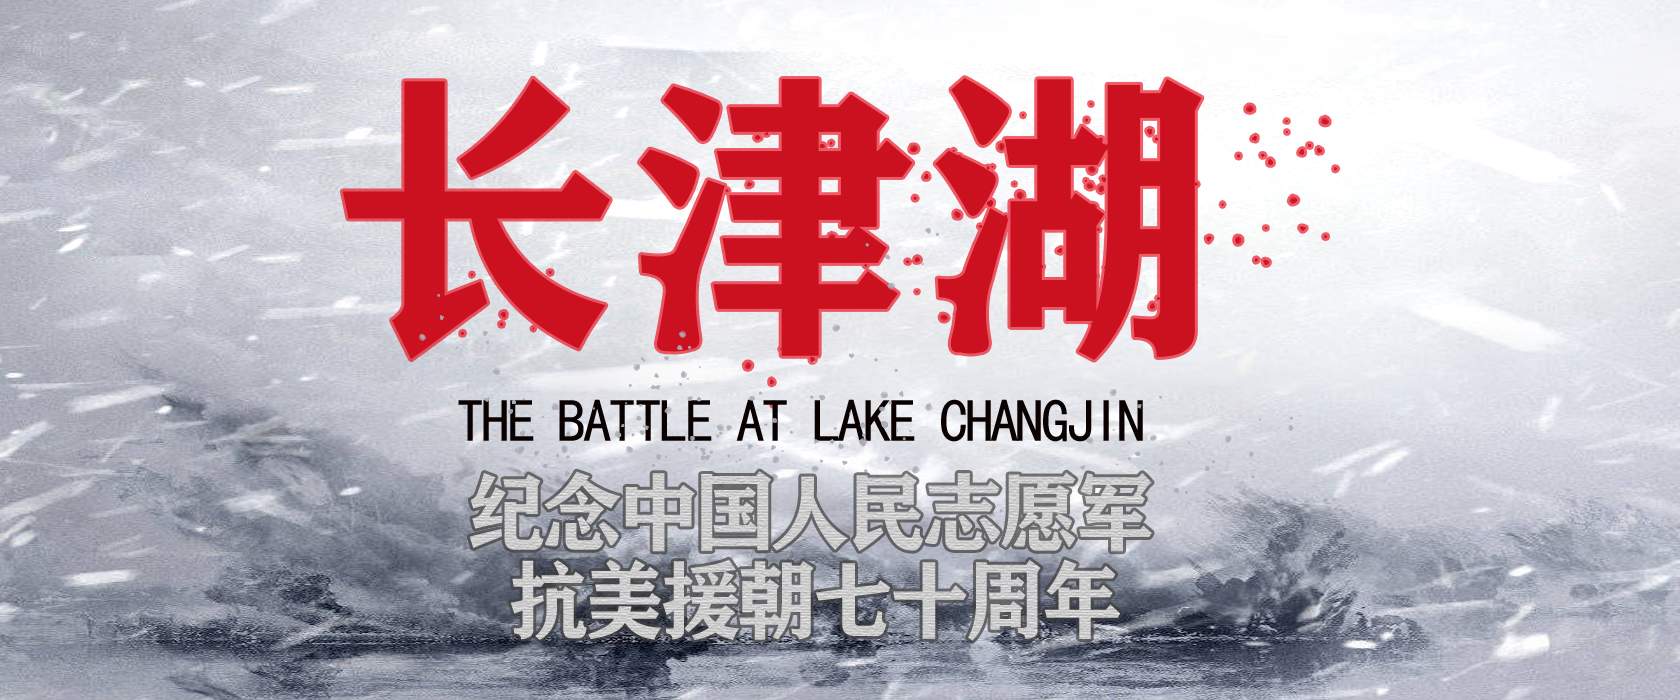 长津湖宣传文案图片